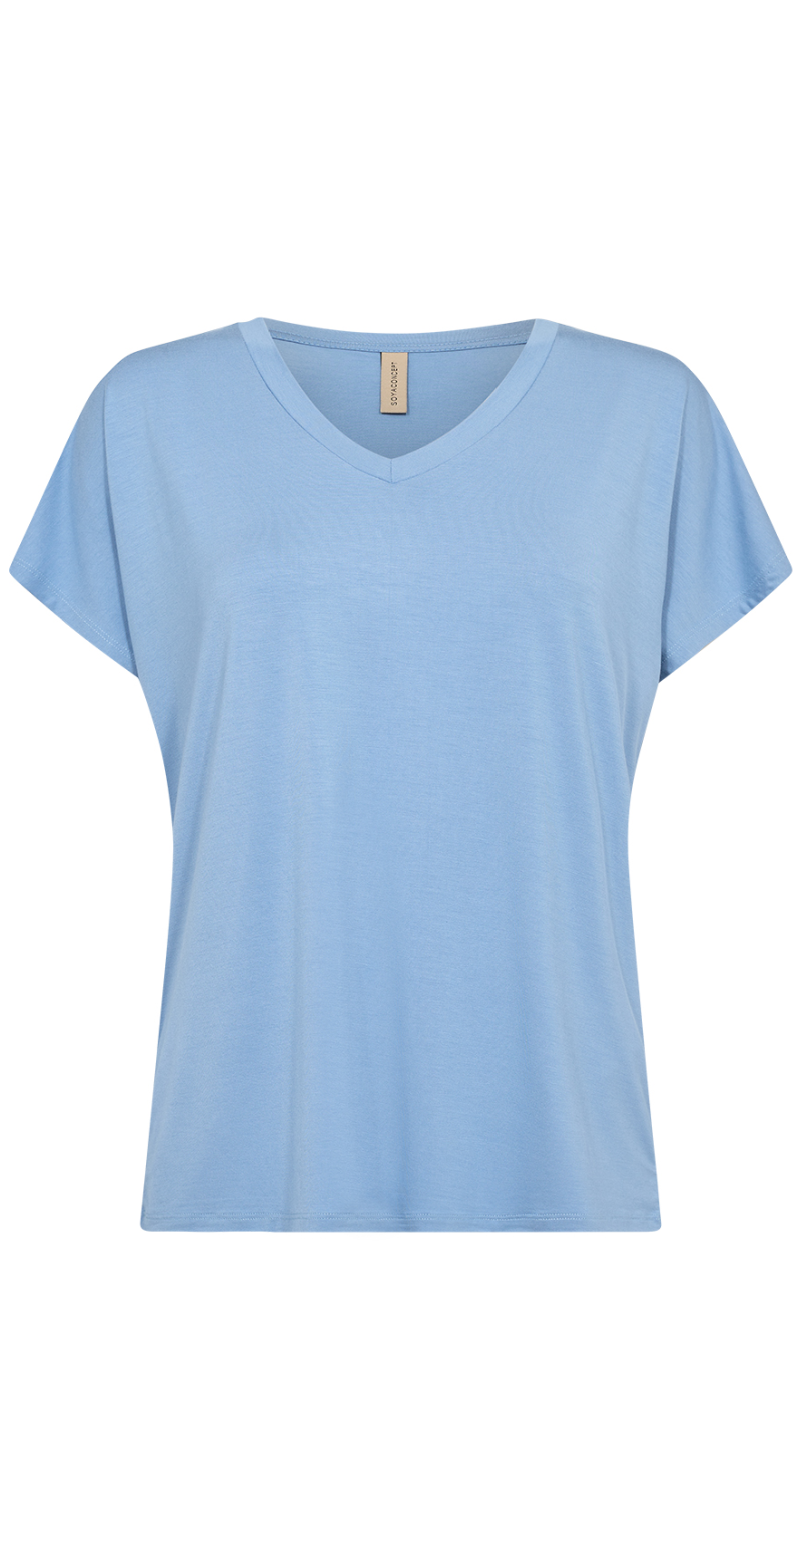 T-shirt med v-hals lysblå forfra